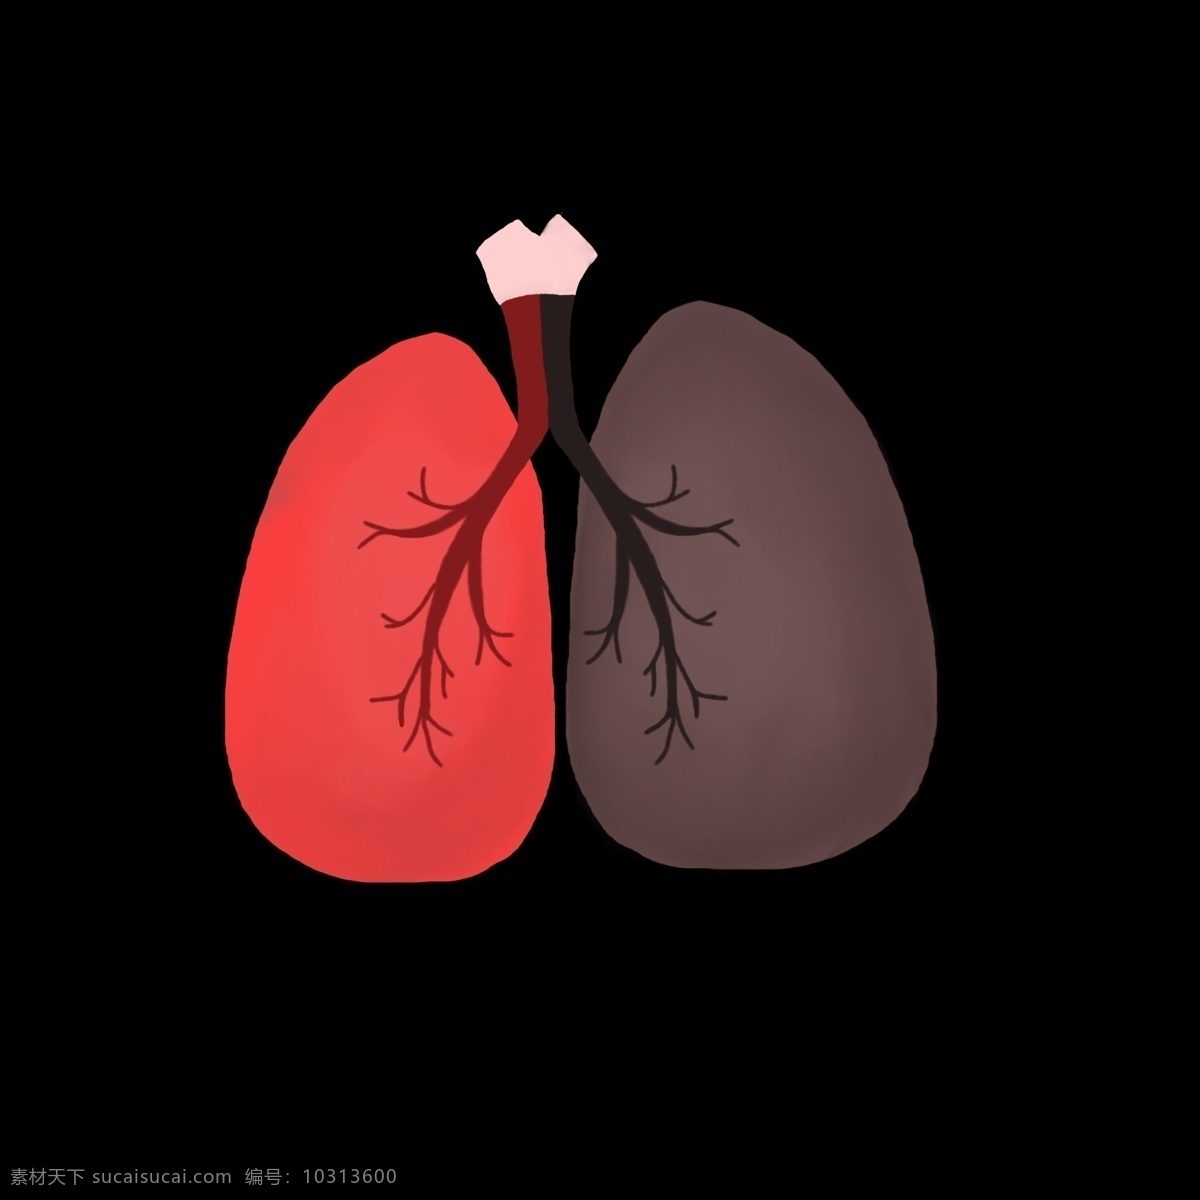 远离 肺结核 禁止 吸烟 医疗 爱护肺部 禁止吸烟 肺部健康